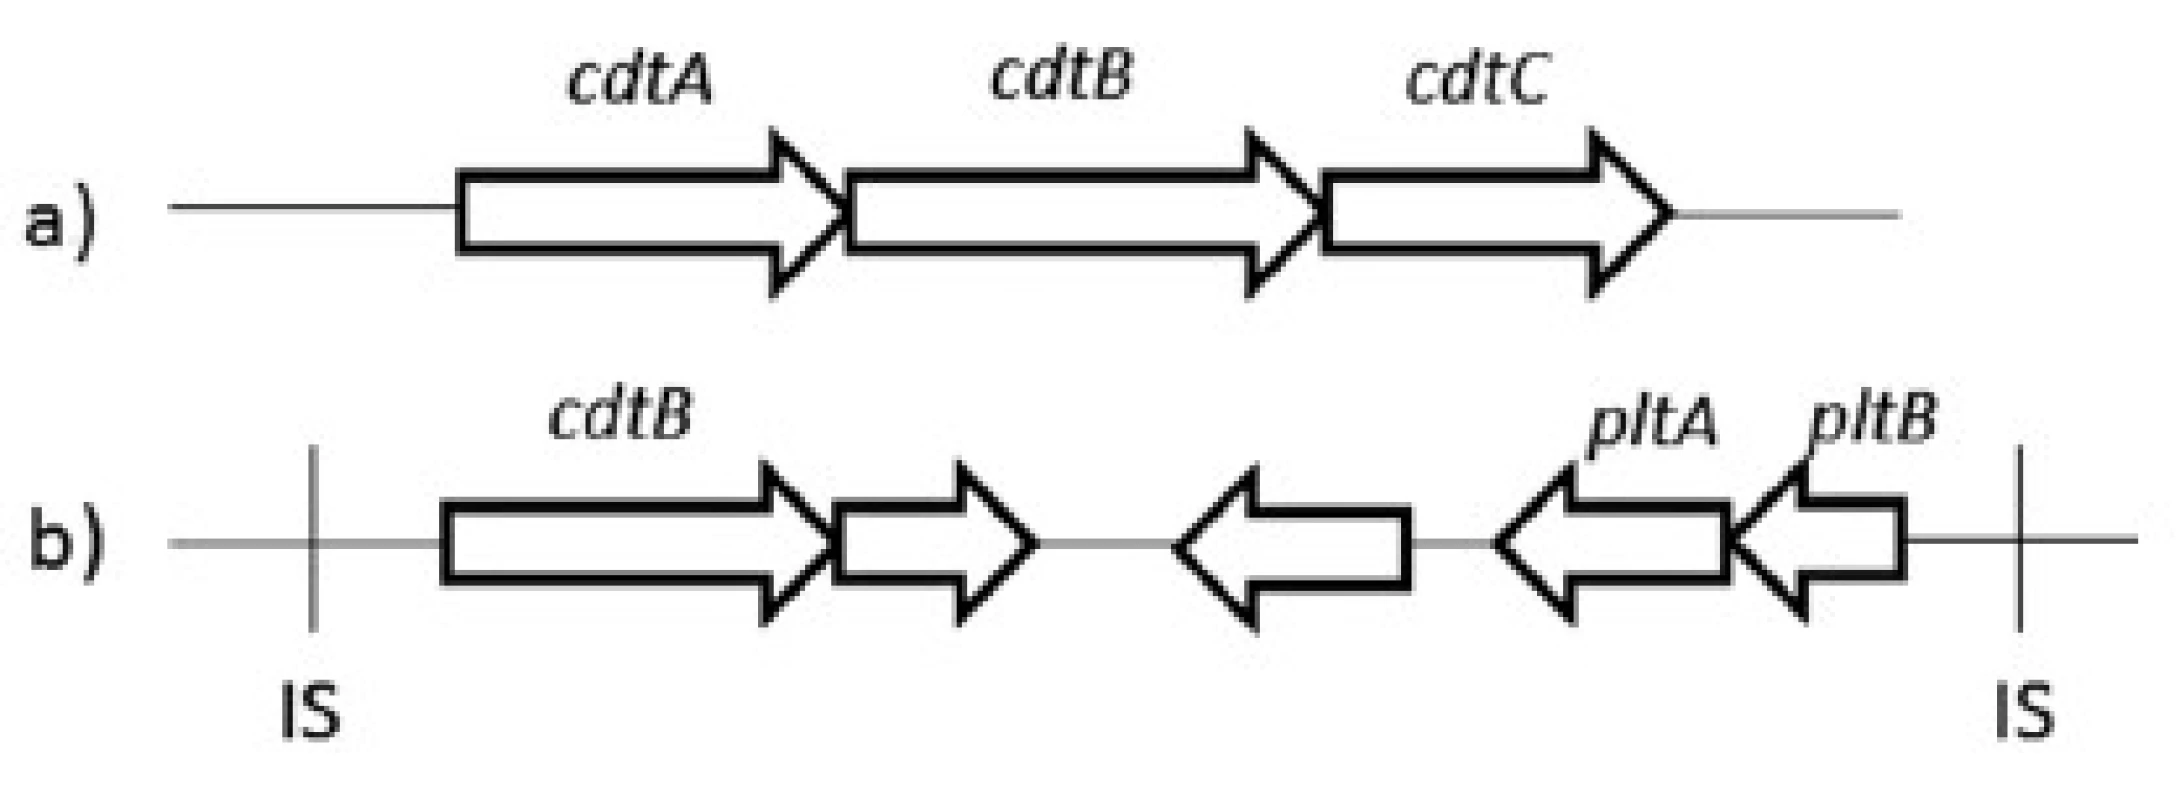 Organizácia génov kódujúcich CDT a) u všetkých baktérií produkujúcich CDT okrem S. Typhi, b) u S. Typhi [upravené podľa 4]
Fig 1. Organization of the genes encoding CDT a) in all CDT-producing bacteria except S. Typhi, b) in S. Typhi [edited by 4]